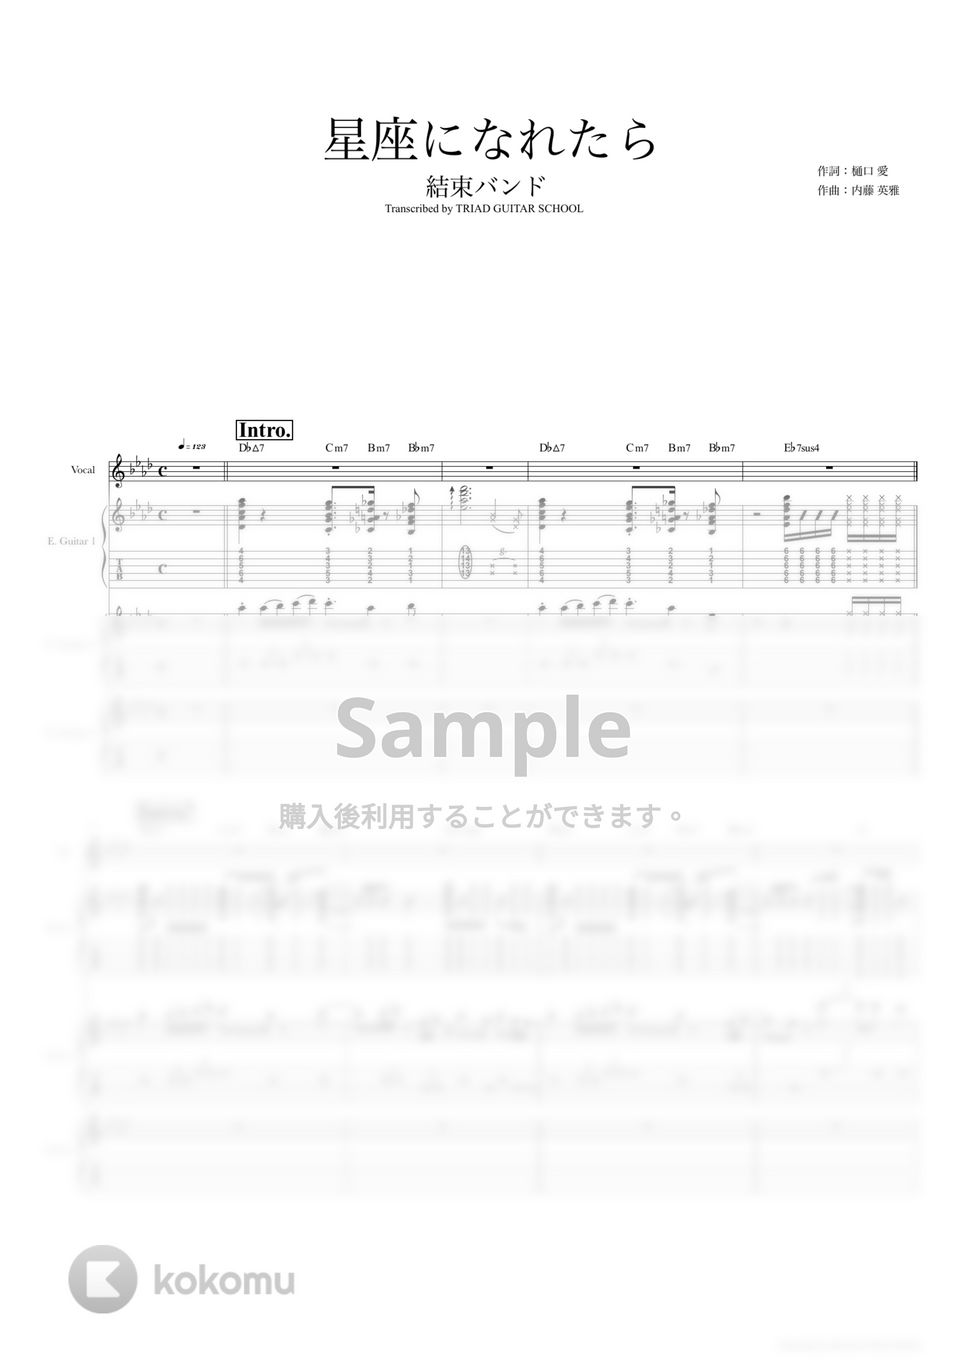 結束バンド - 星座になれたら (ギタースコア・歌詞・コード付き) by TRIAD GUITAR SCHOOL